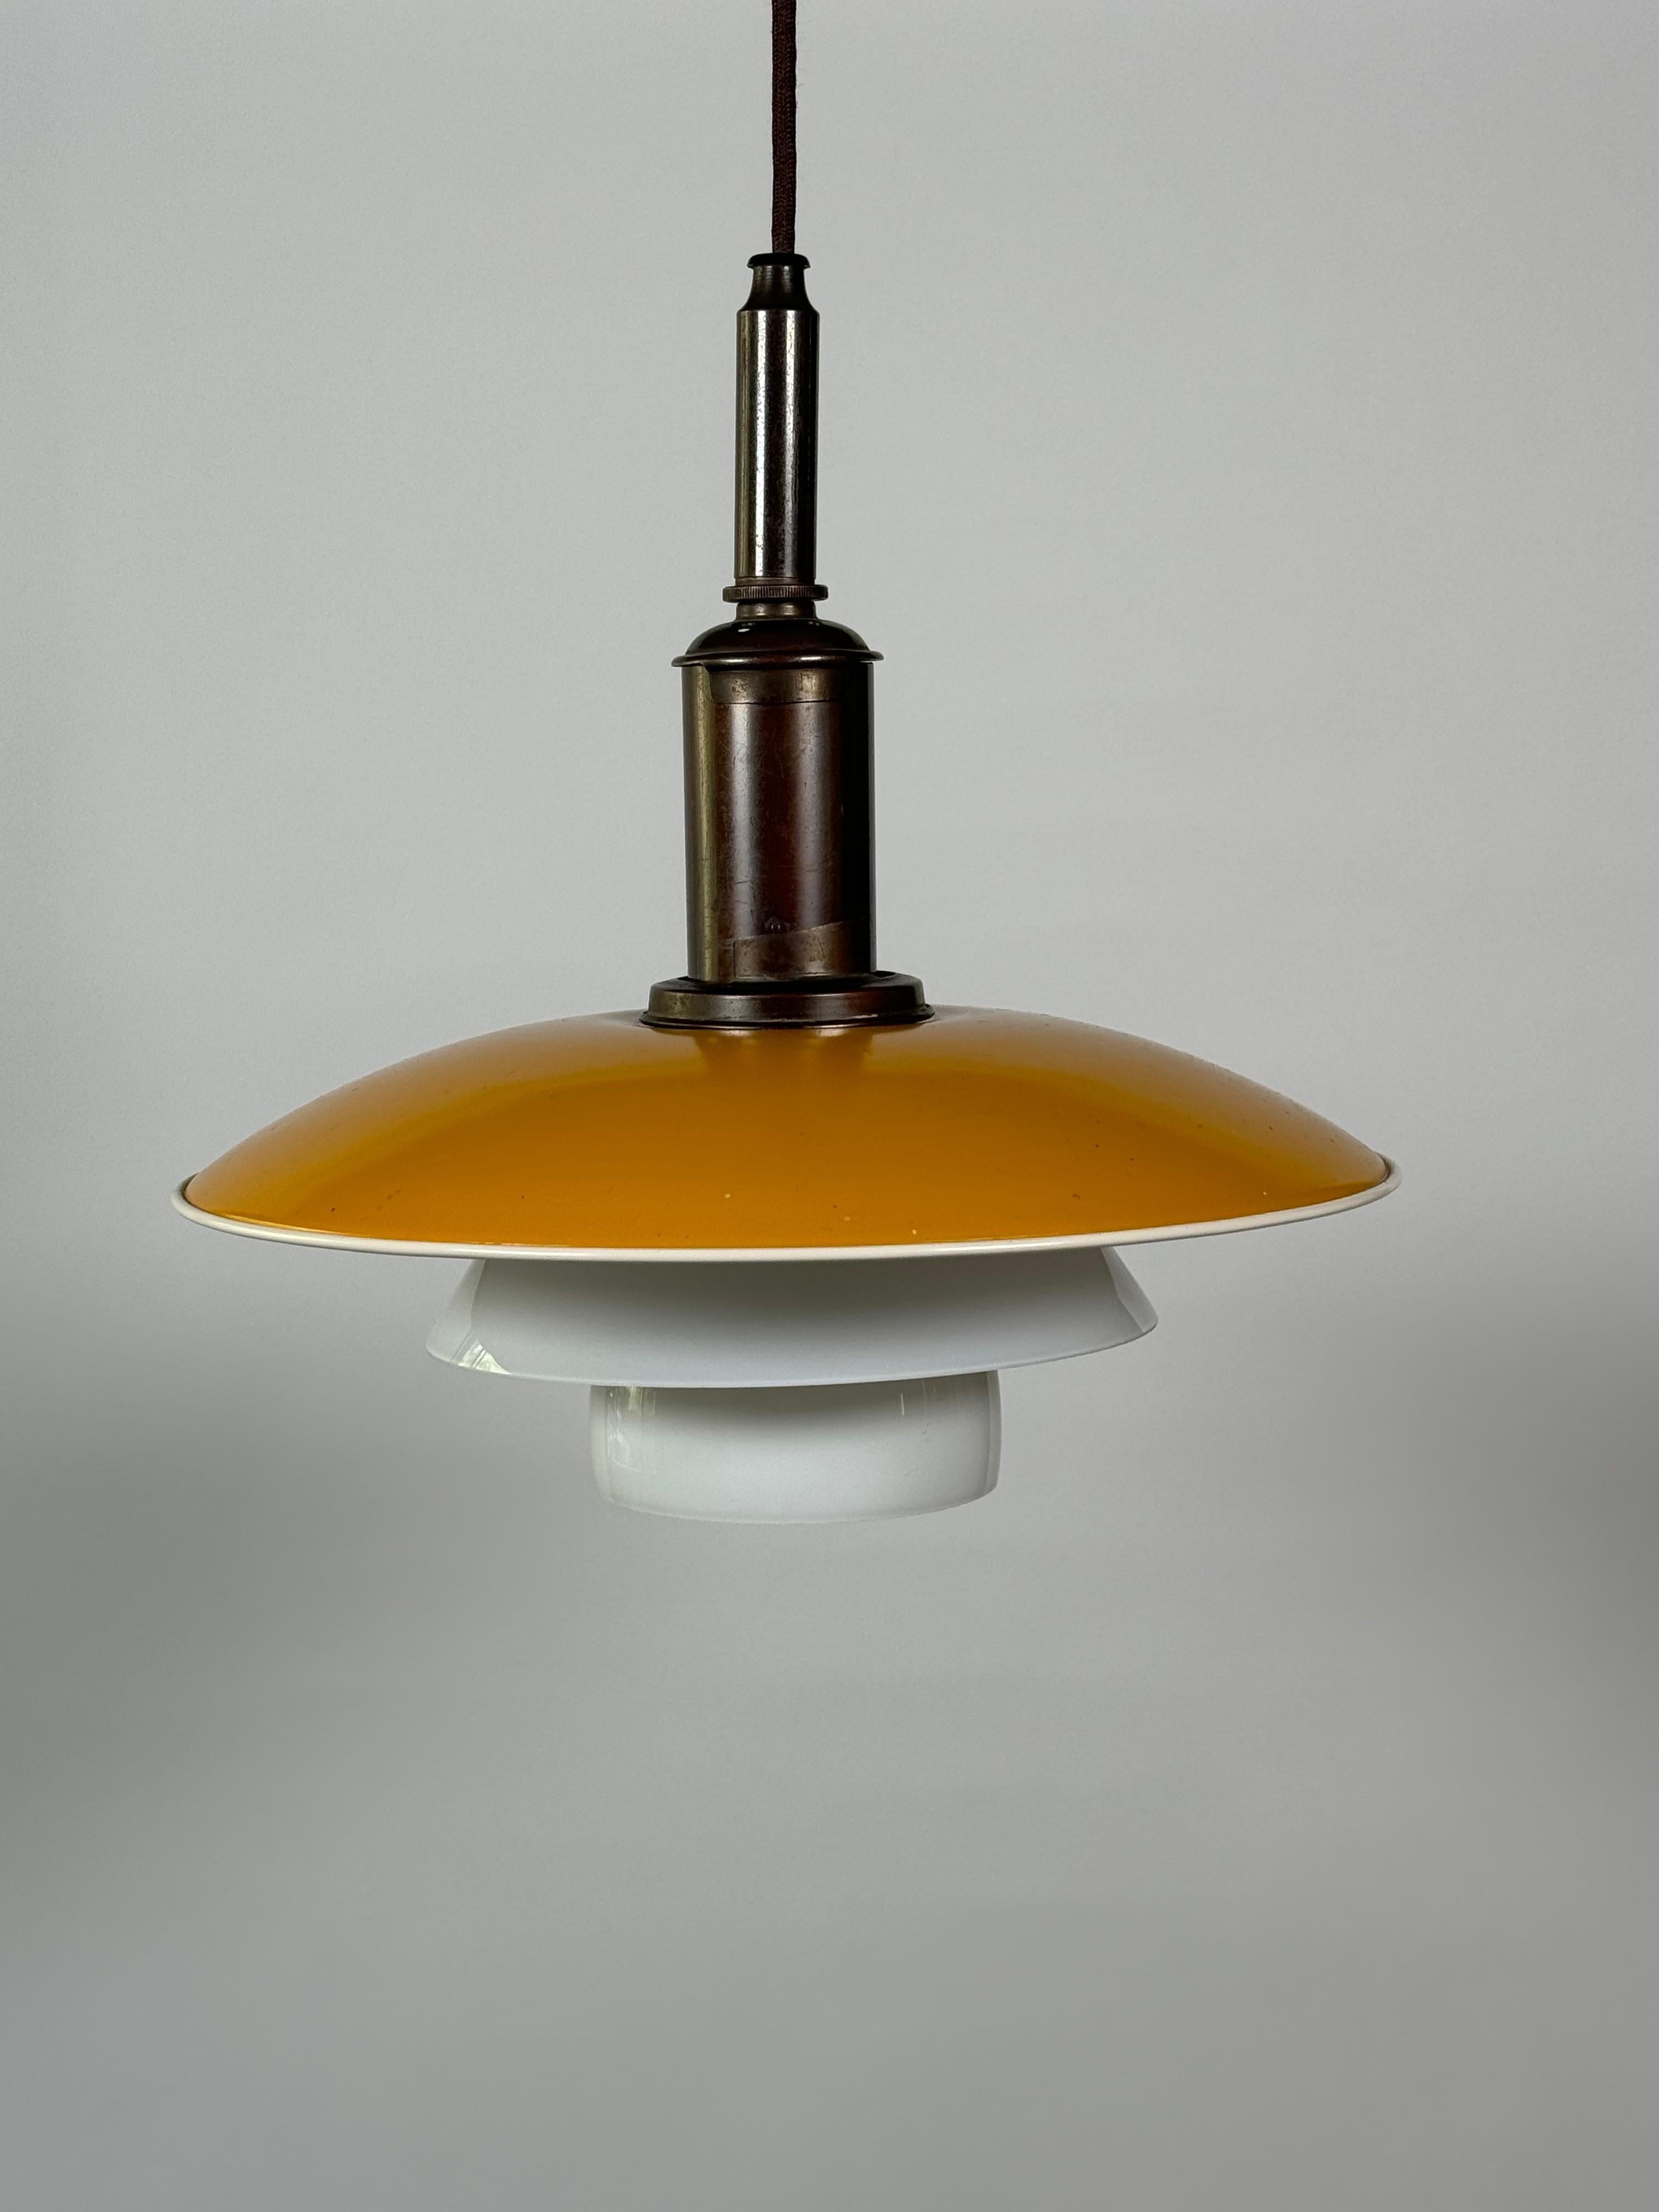 Poul Henningsen 3/2 Pendelleuchte aus den frühen 1930er Jahren für Louis Poulsen & Co. aus Dänemark. Kupfer- und Glaskonstruktion, oberer Schirm aus lackiertem, senffarbenem Kupfer, die beiden unteren Schirme aus weißem Glas, der Rest der Leuchte